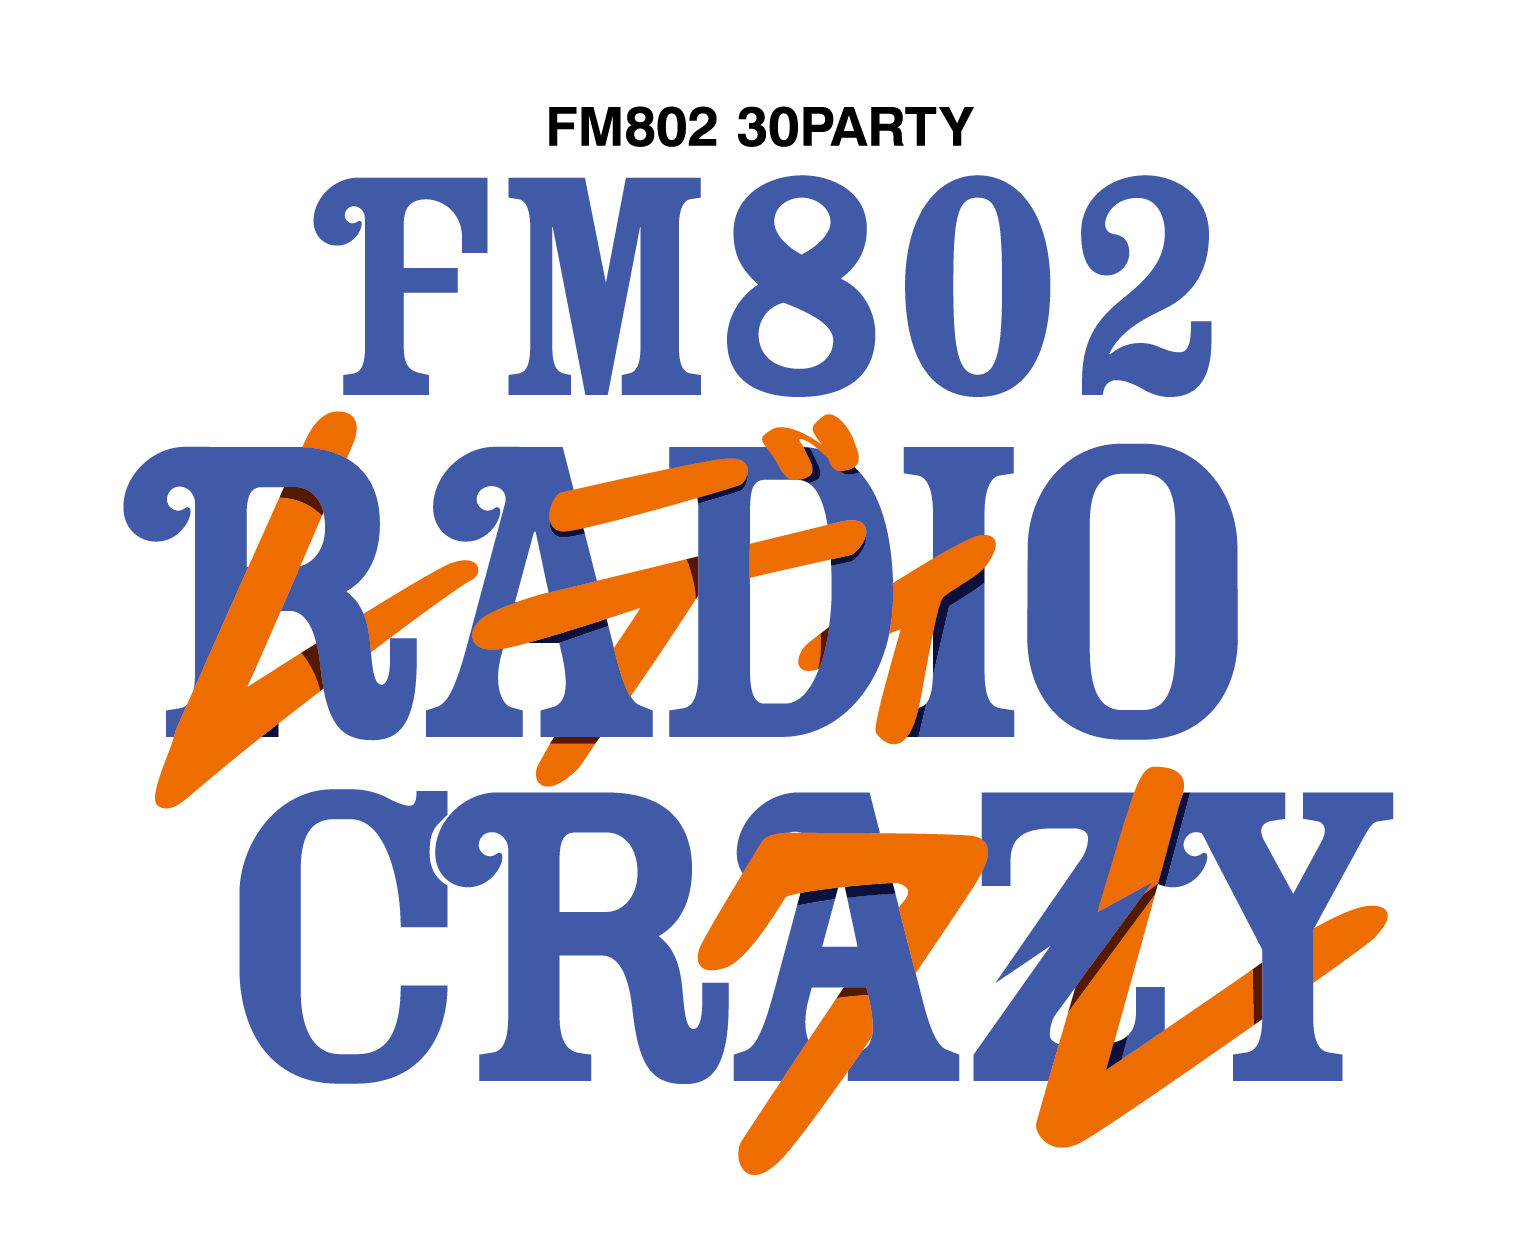 2019.12.25(水)　FM802 30PARTY FM802 ROCK FESTIVAL RADIO CRAZY 2019　インテックス大阪 